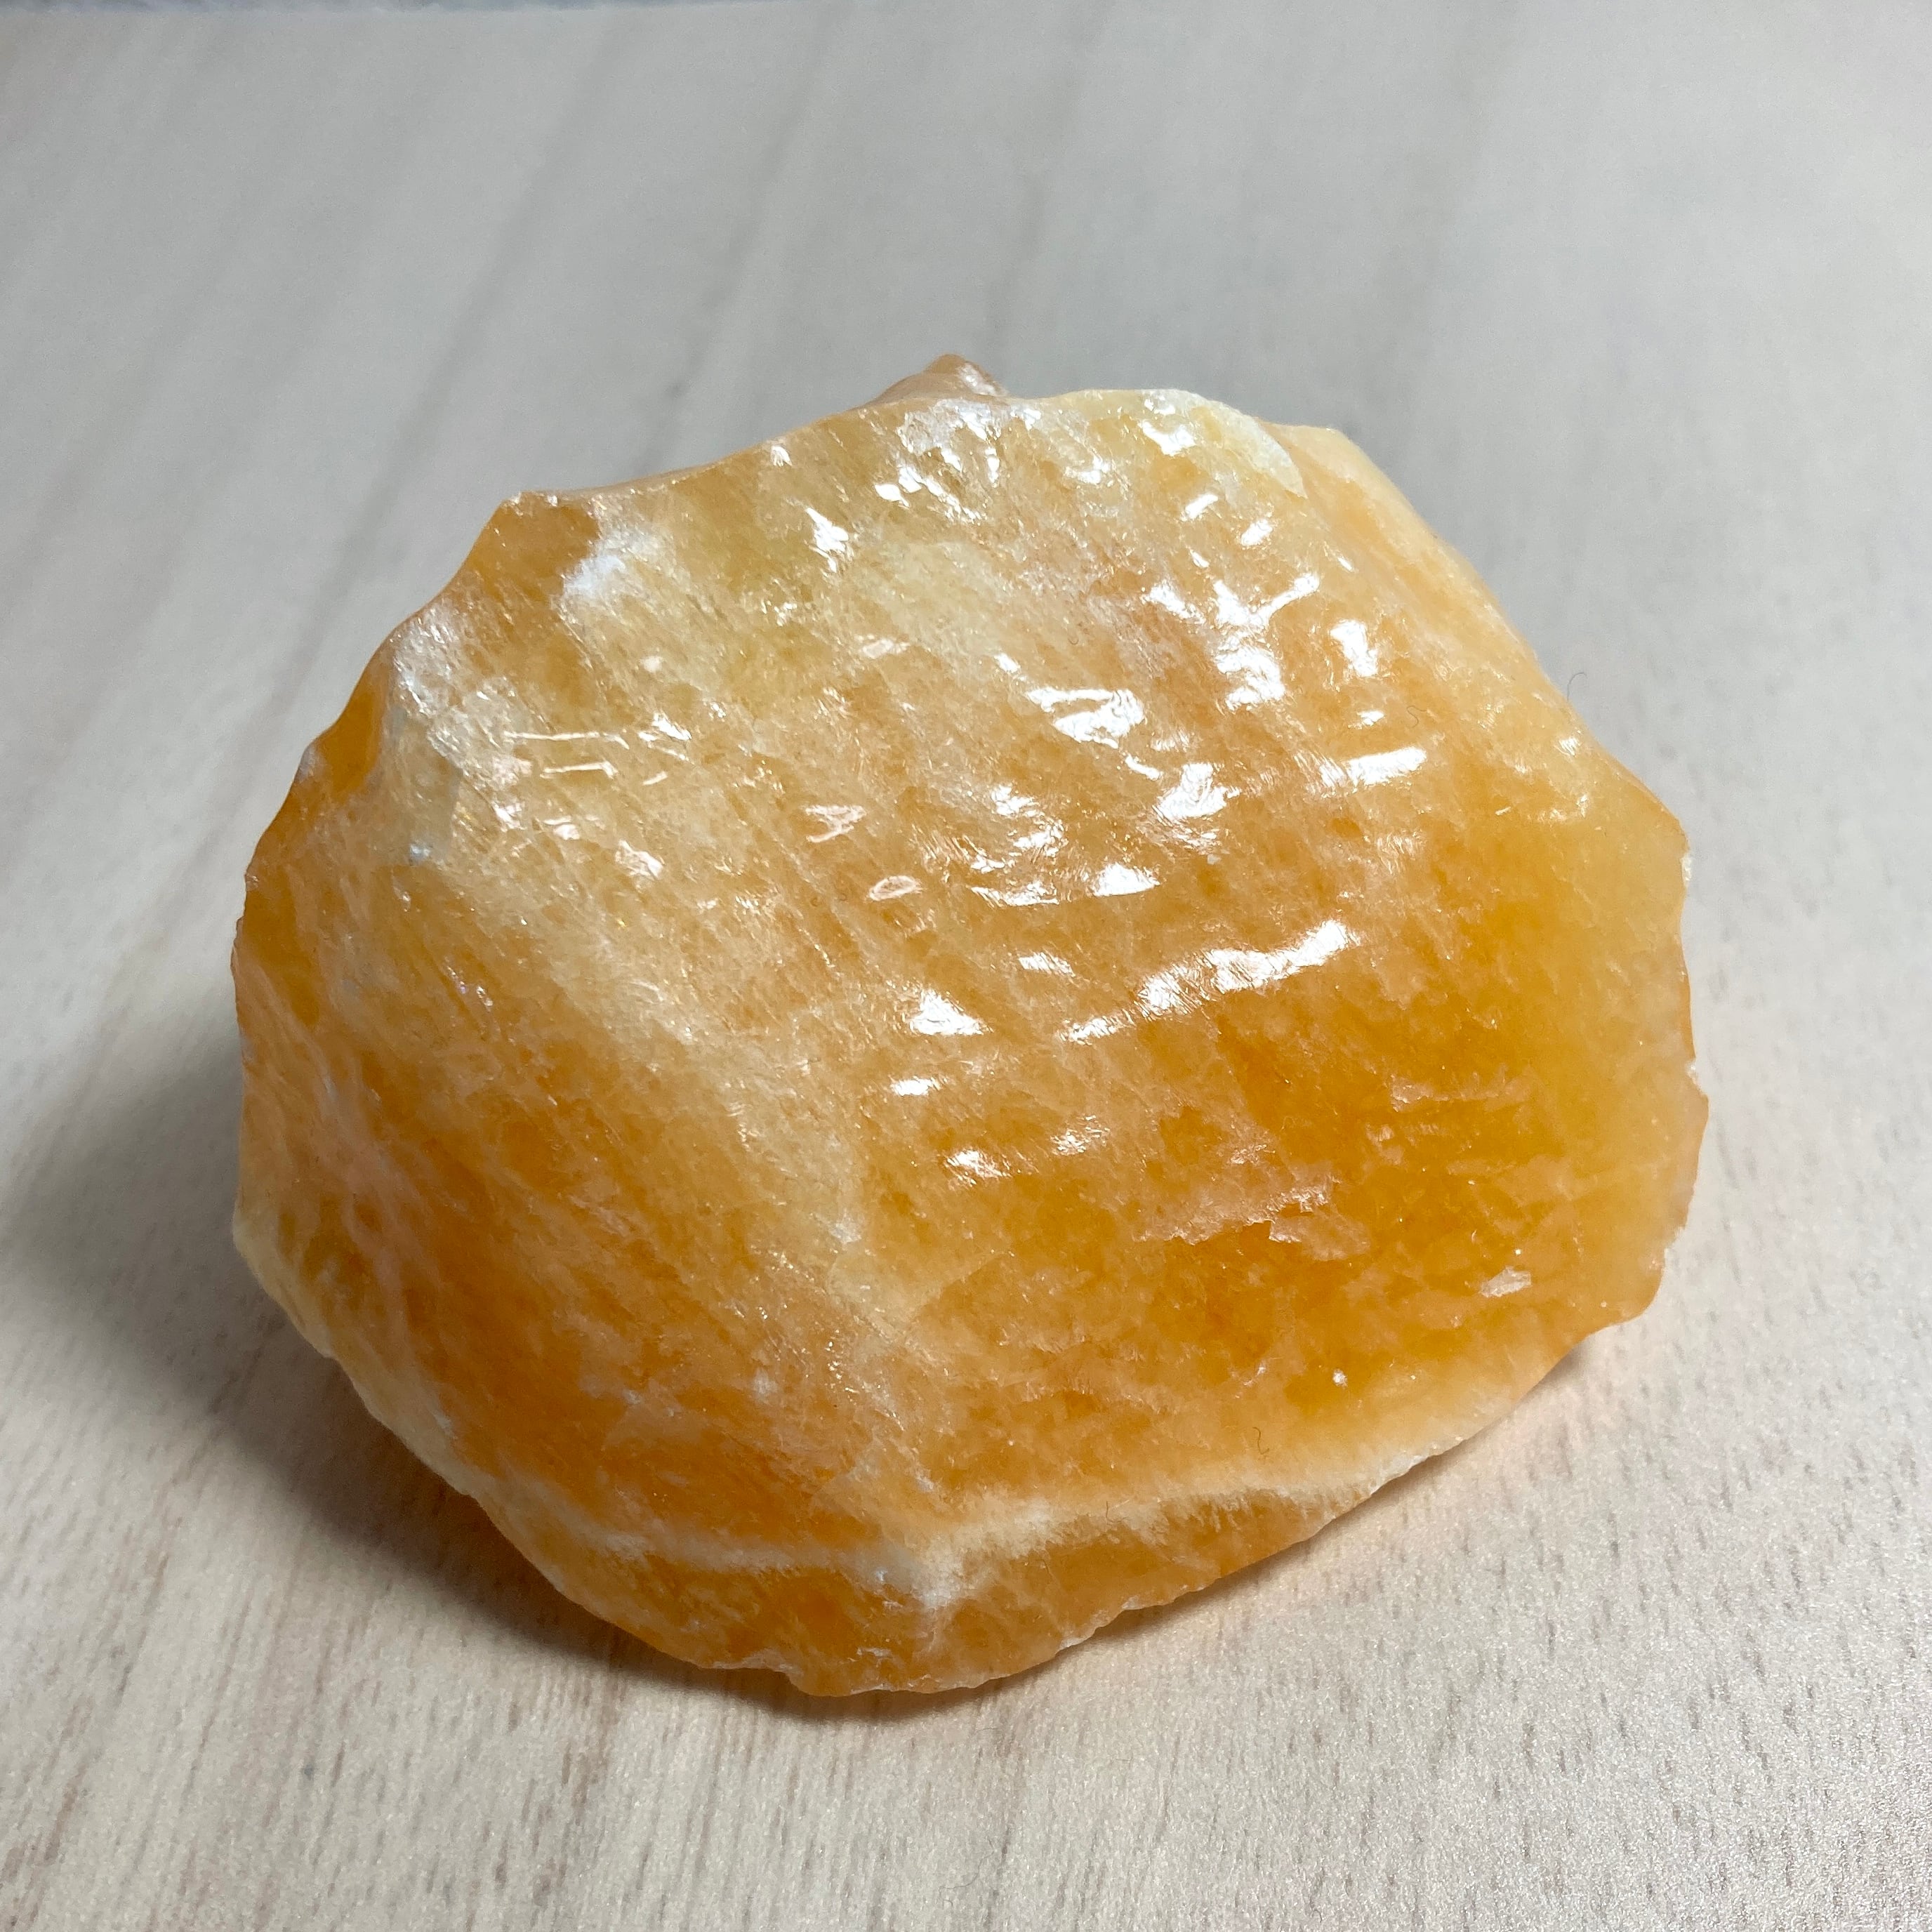 オレンジカルサイト 304g 天然石原石 ツルツル触感 | Hanamomo-stone